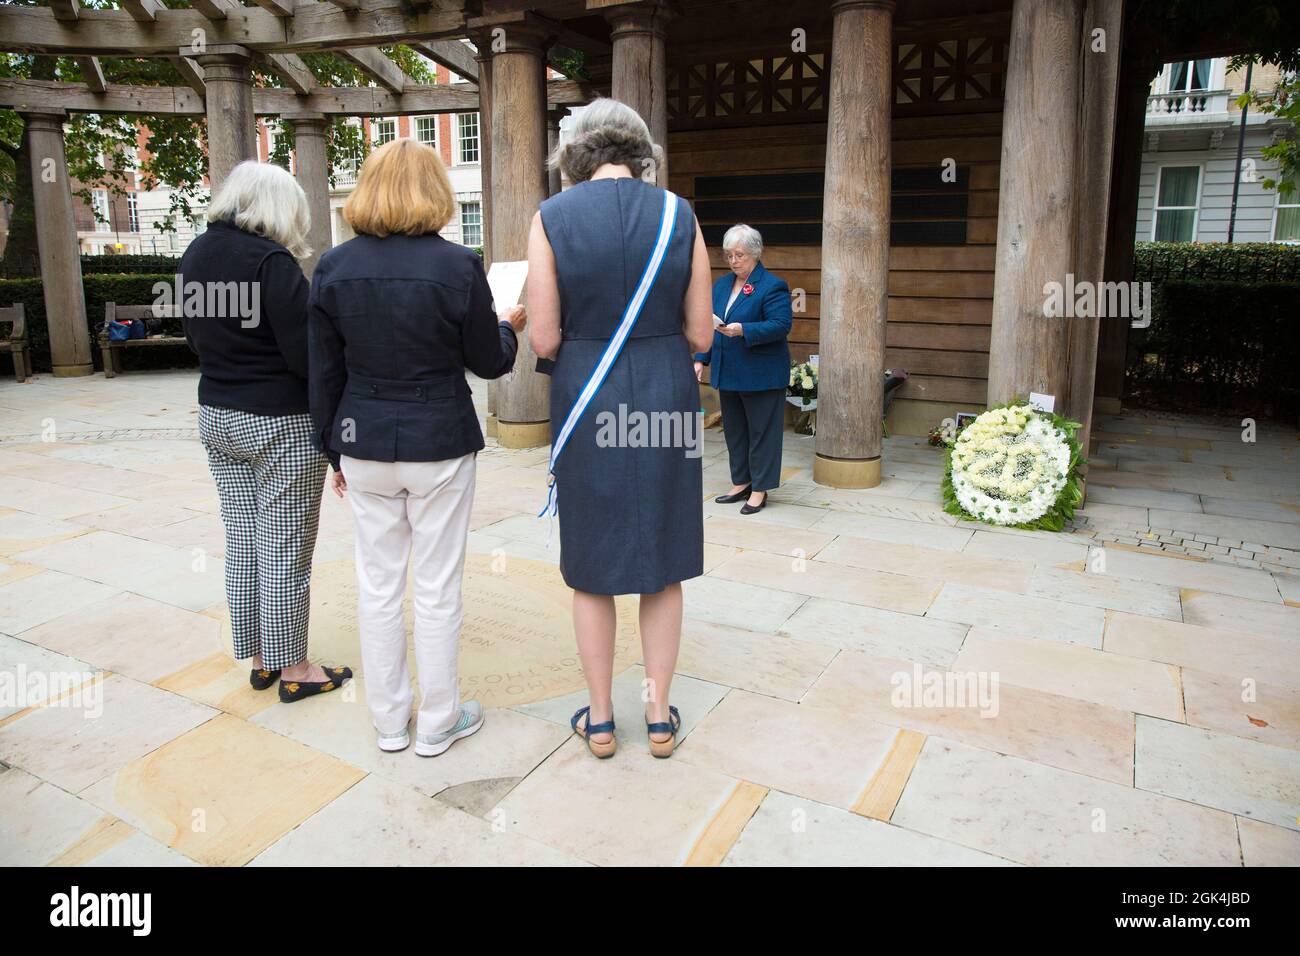 La gente visita un monumento conmemorativo a las víctimas de los atentados terroristas de 9/11 en Grosvenor Square, Londres, en el 20th aniversario de los ataques, el 11 de septiembre de 2020 Foto de stock